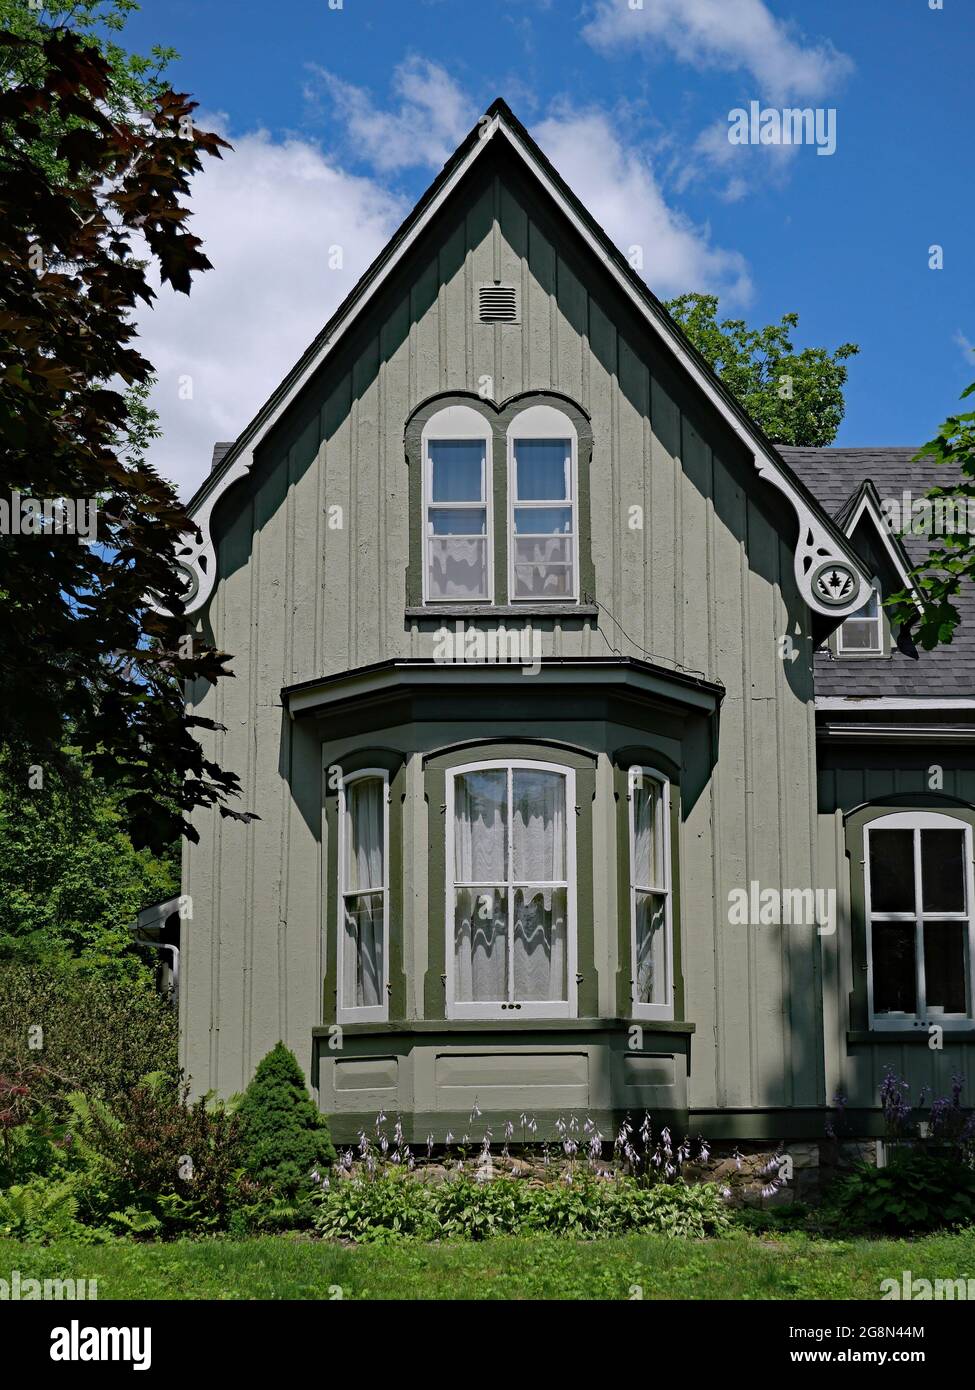 Ancienne maison de style gothique américain avec baie vitrée, peinte en vert pâle Banque D'Images